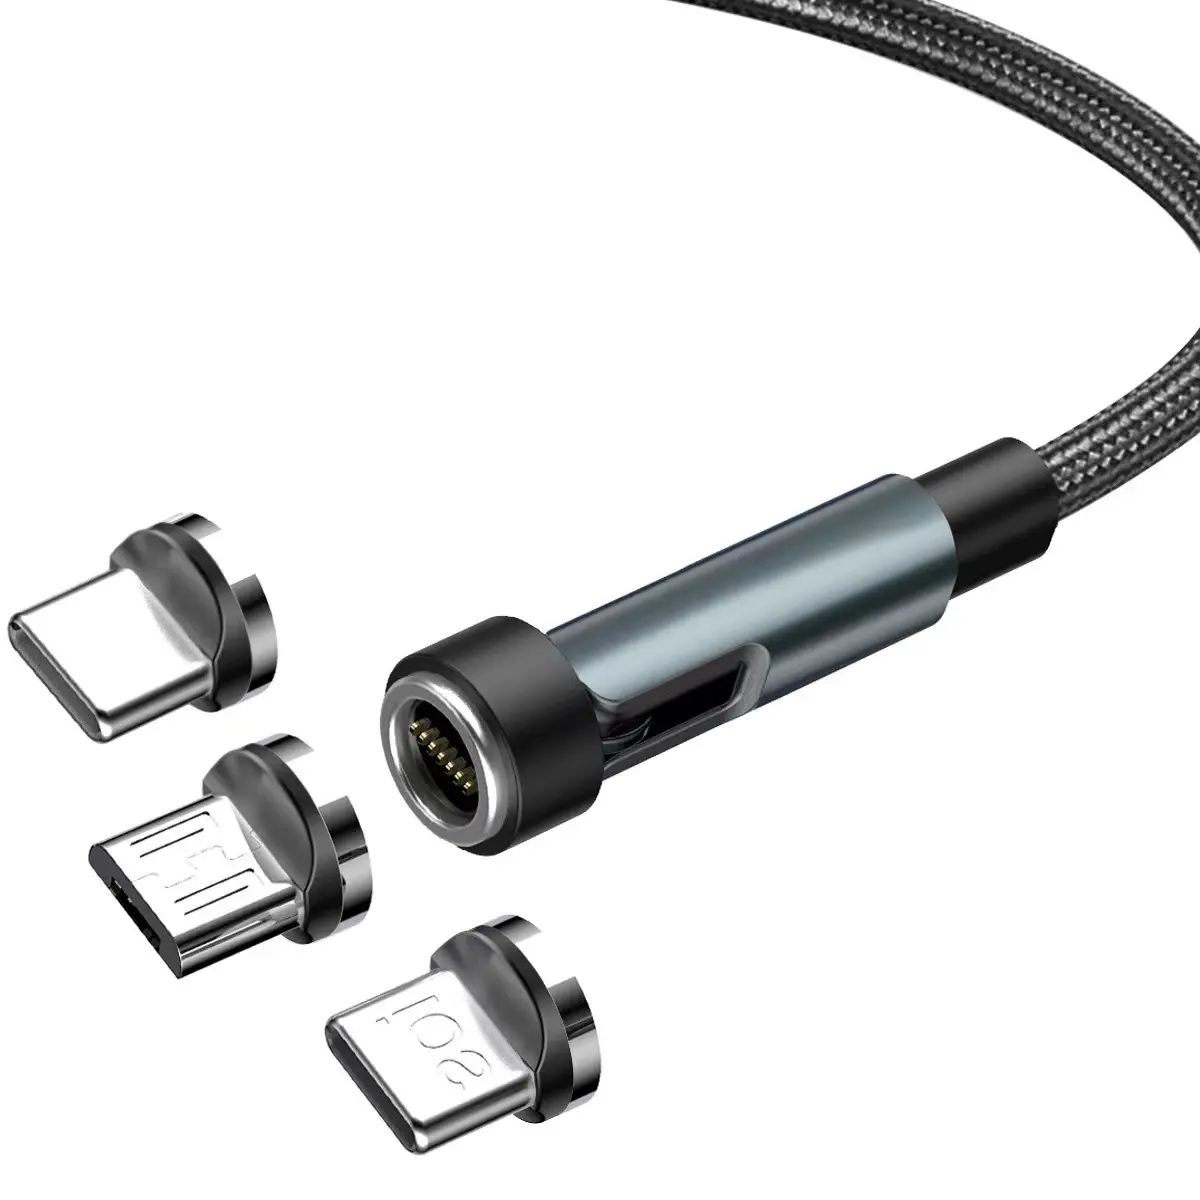 2024 nuevo cable de datos de succión magnético trenzado, cable de datos de carga rápida móvil USB giratorio Android tres en uno